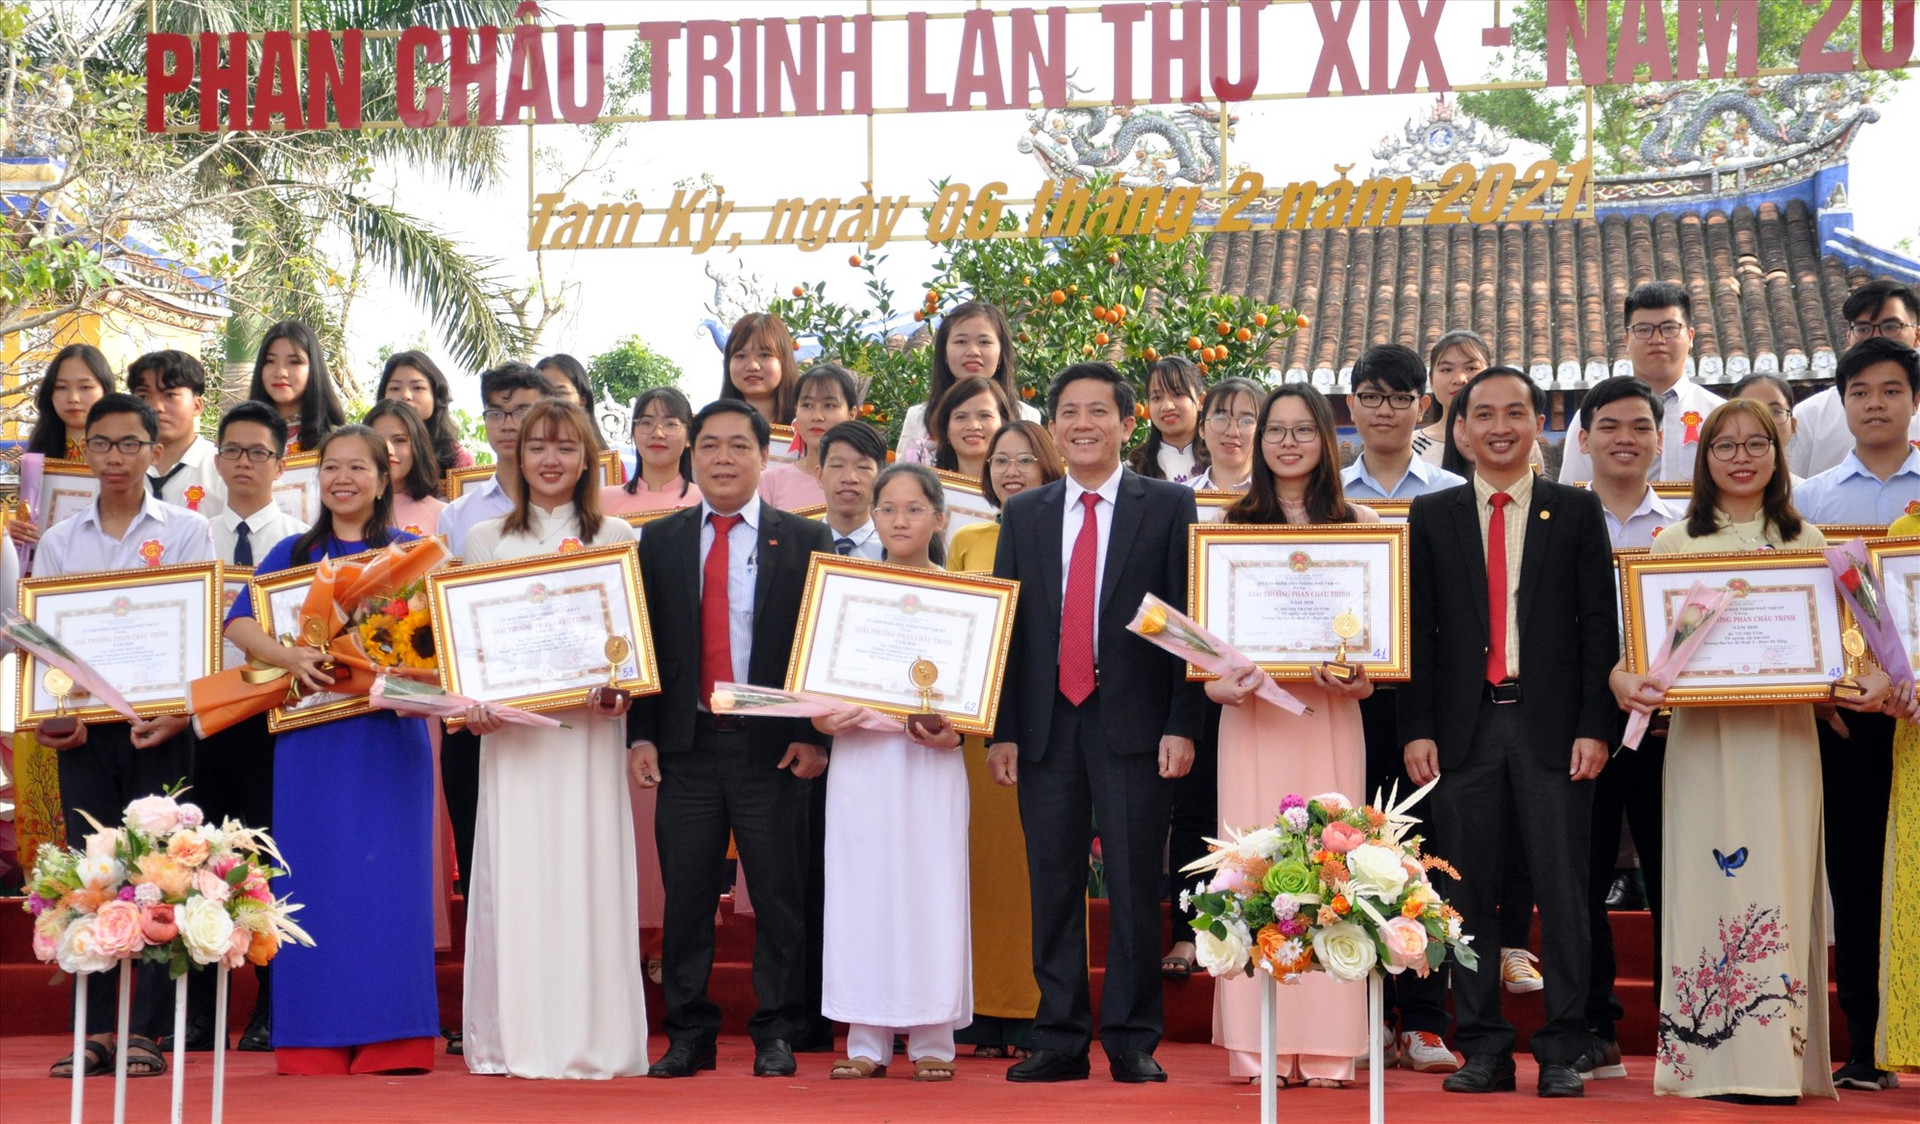 Giải thưởng Phan Châu Trinh tạo động lực cho việc học đối với công dân Tam Kỳ. Ảnh: X.P